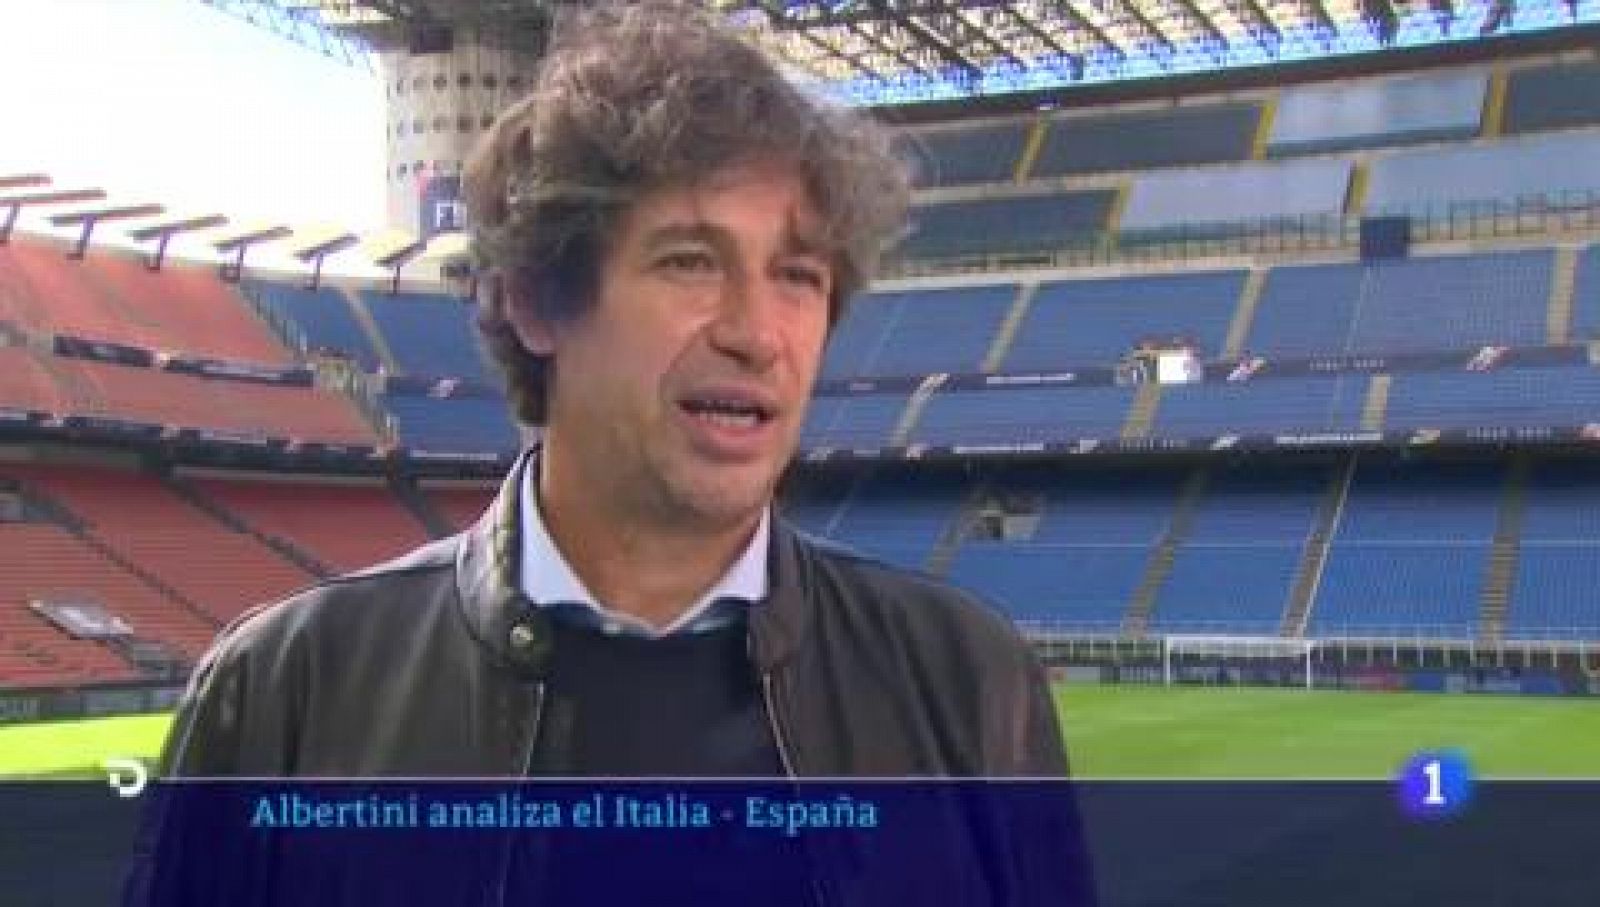 Albertini: "España tiene calidad y el talento no tiene edad"